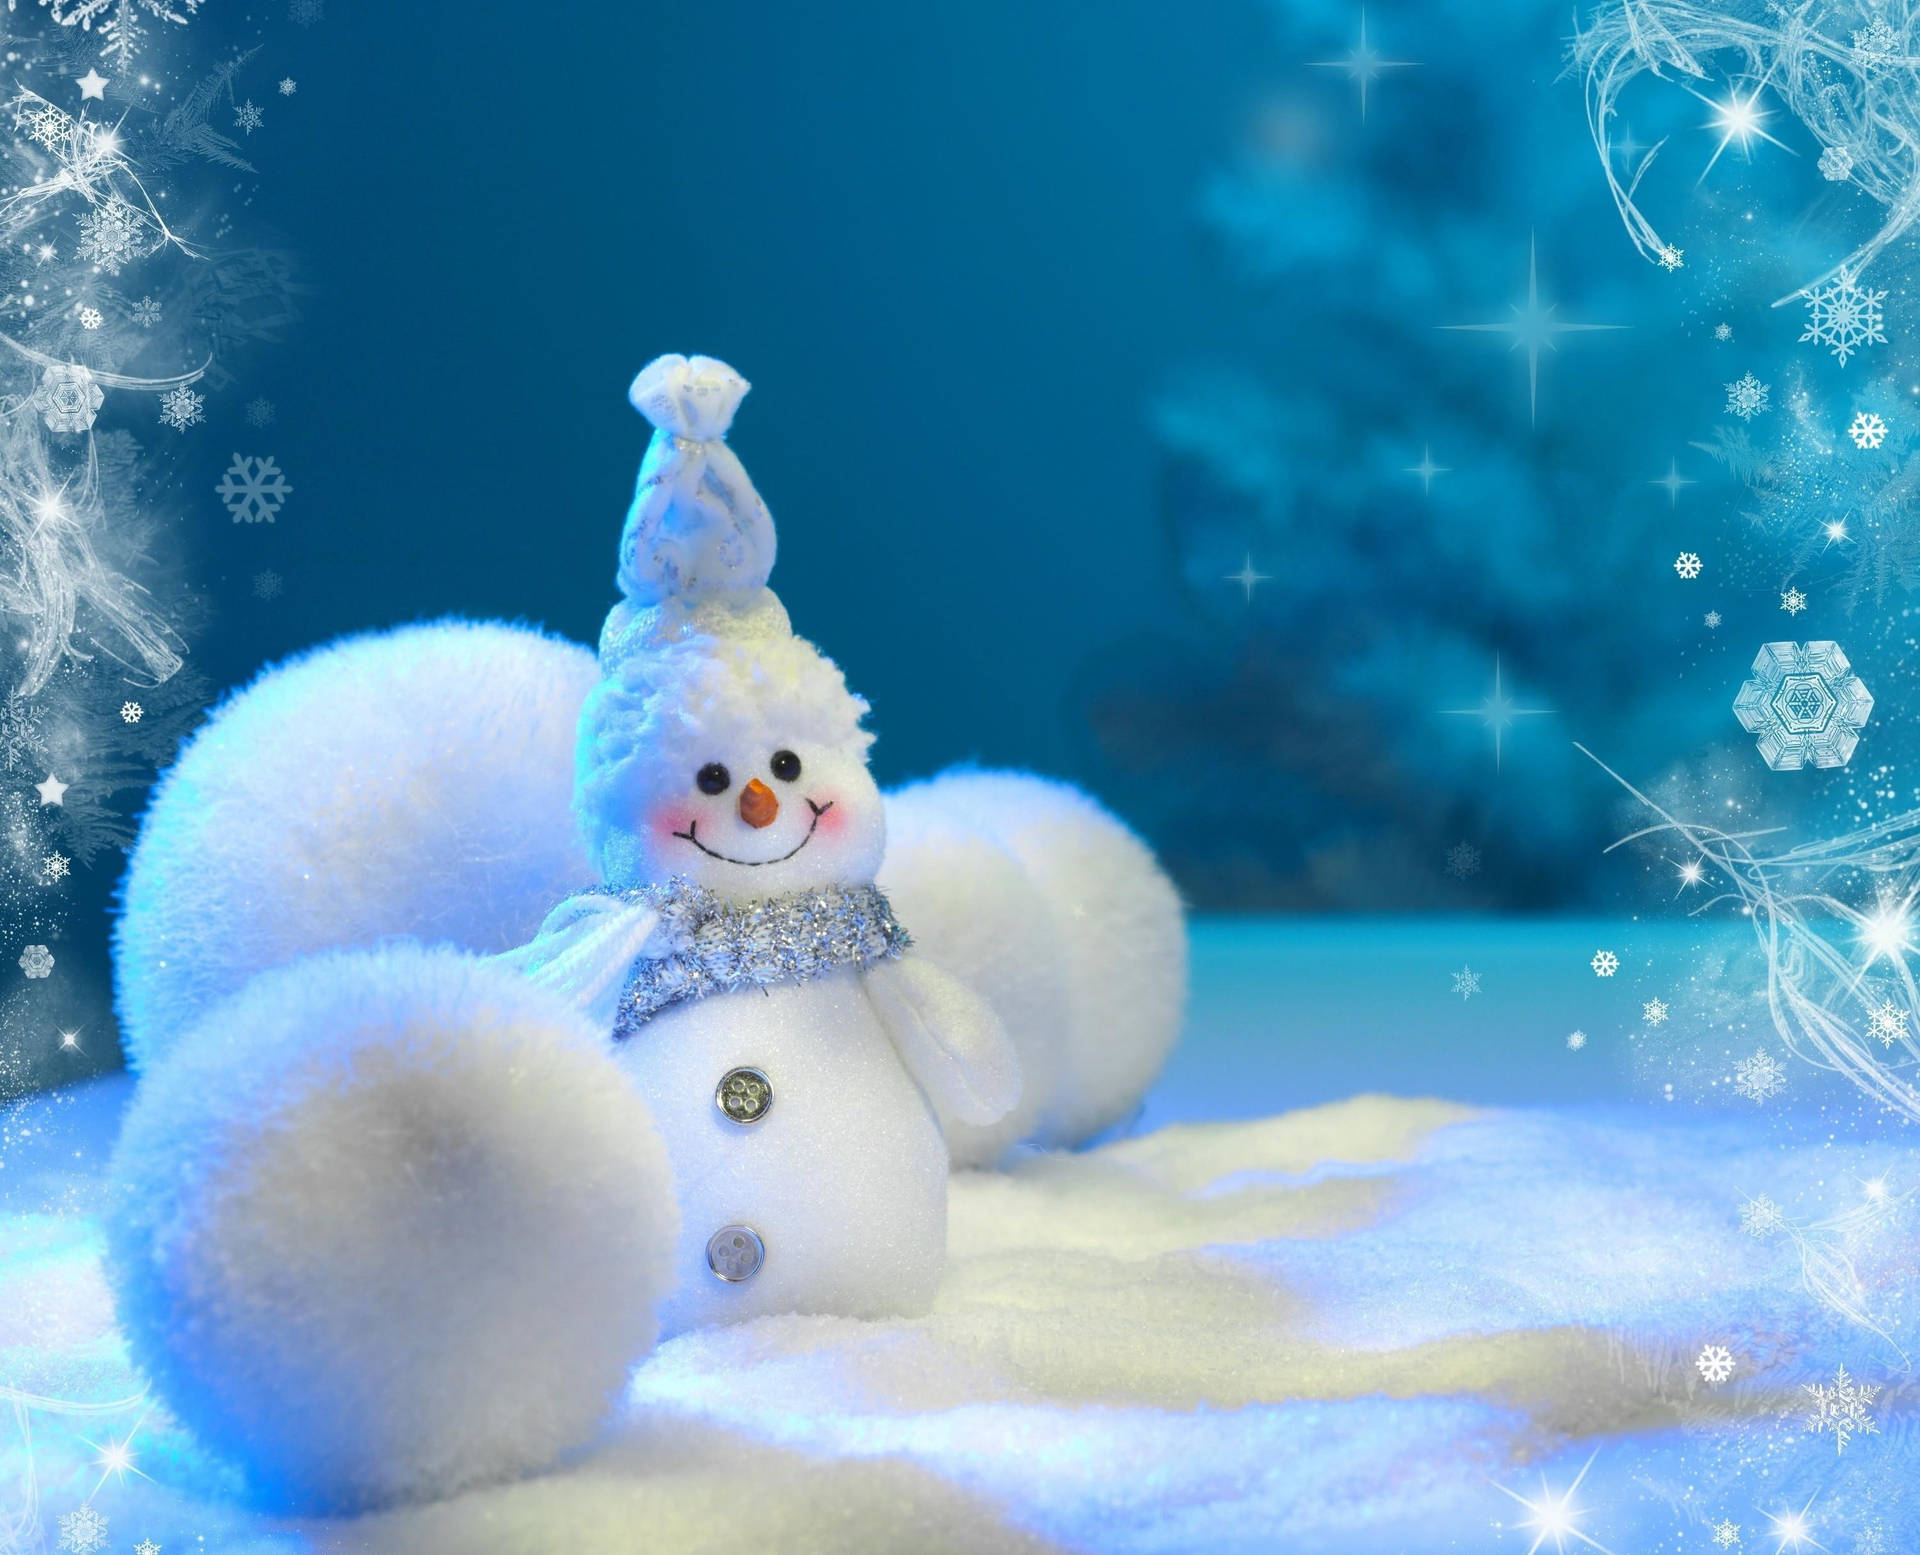 Snowman Snow Balls Background